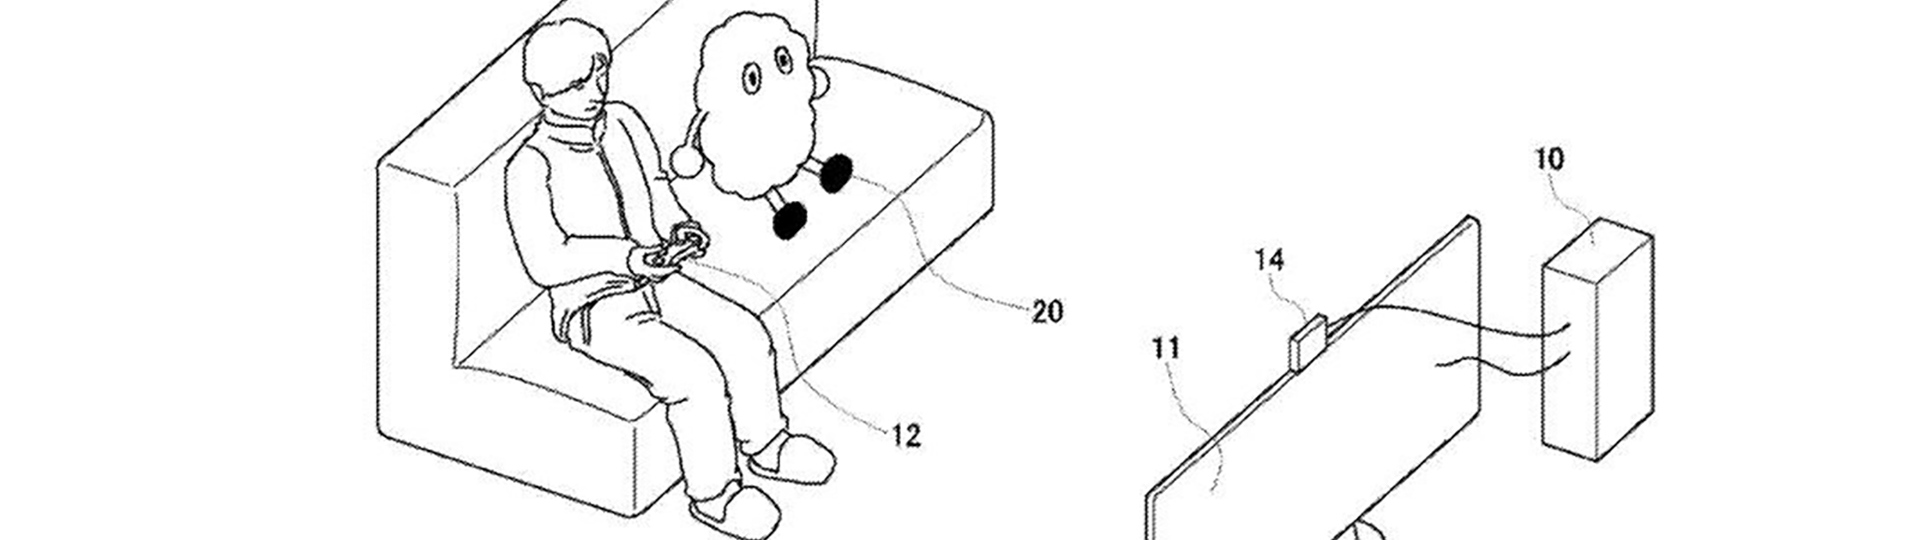 Nový patent Sony: Robot coby kamarád osamělých hráčů | Novinky